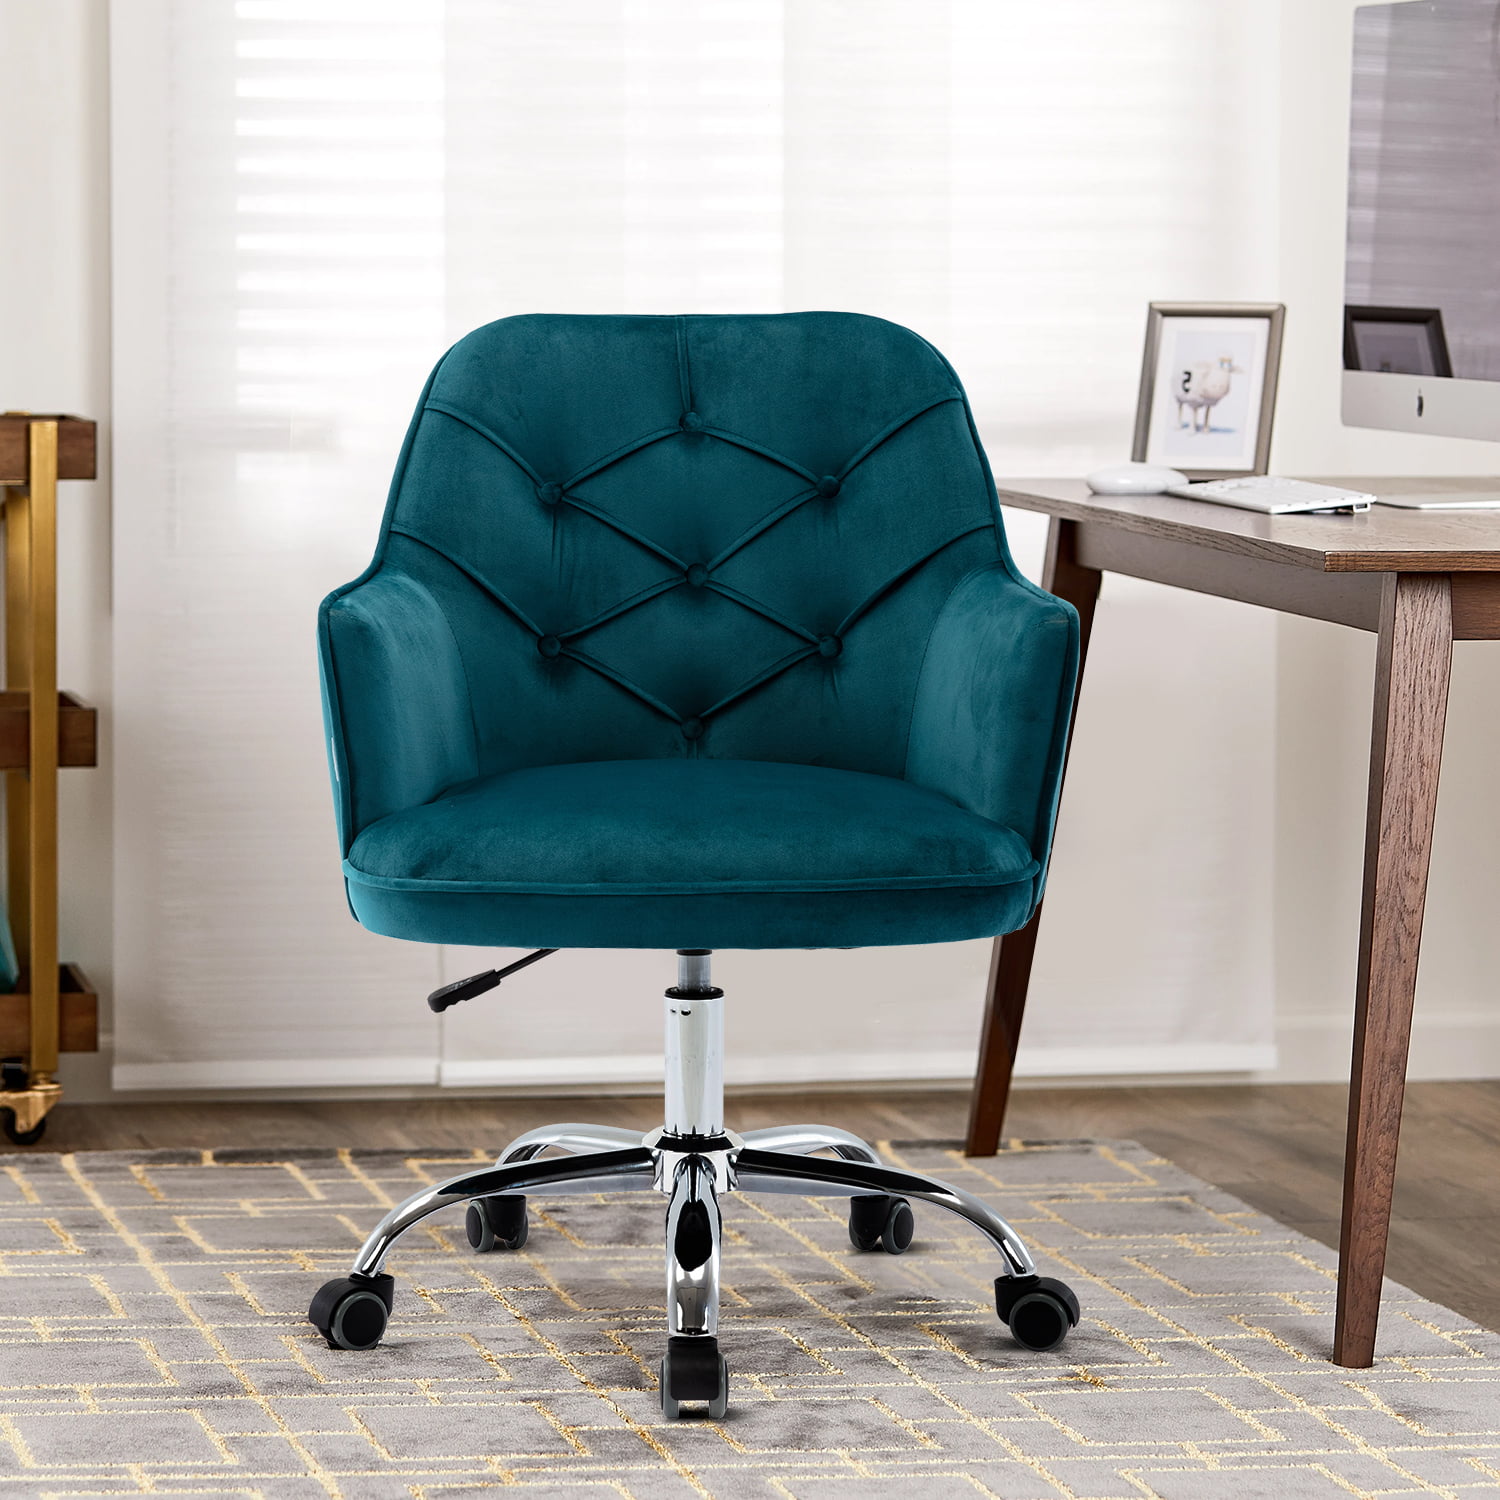 Velvet Desk Chair, Modern Upholstered Arm Chair with